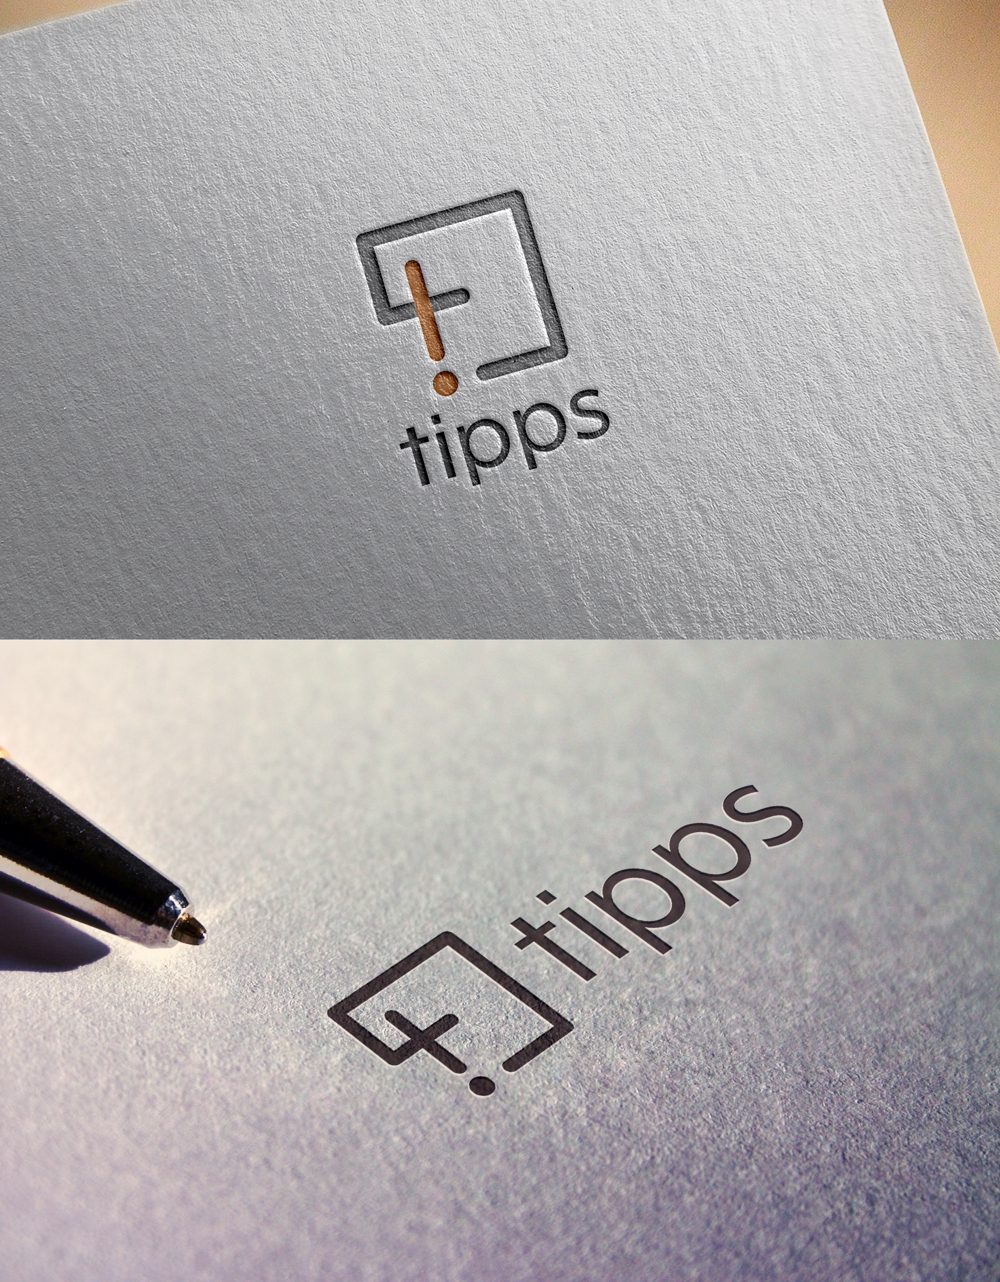 ◉神戸拠点│健康産業の会社│社名変更│社名「tipps」（ティップス）のロゴ作成